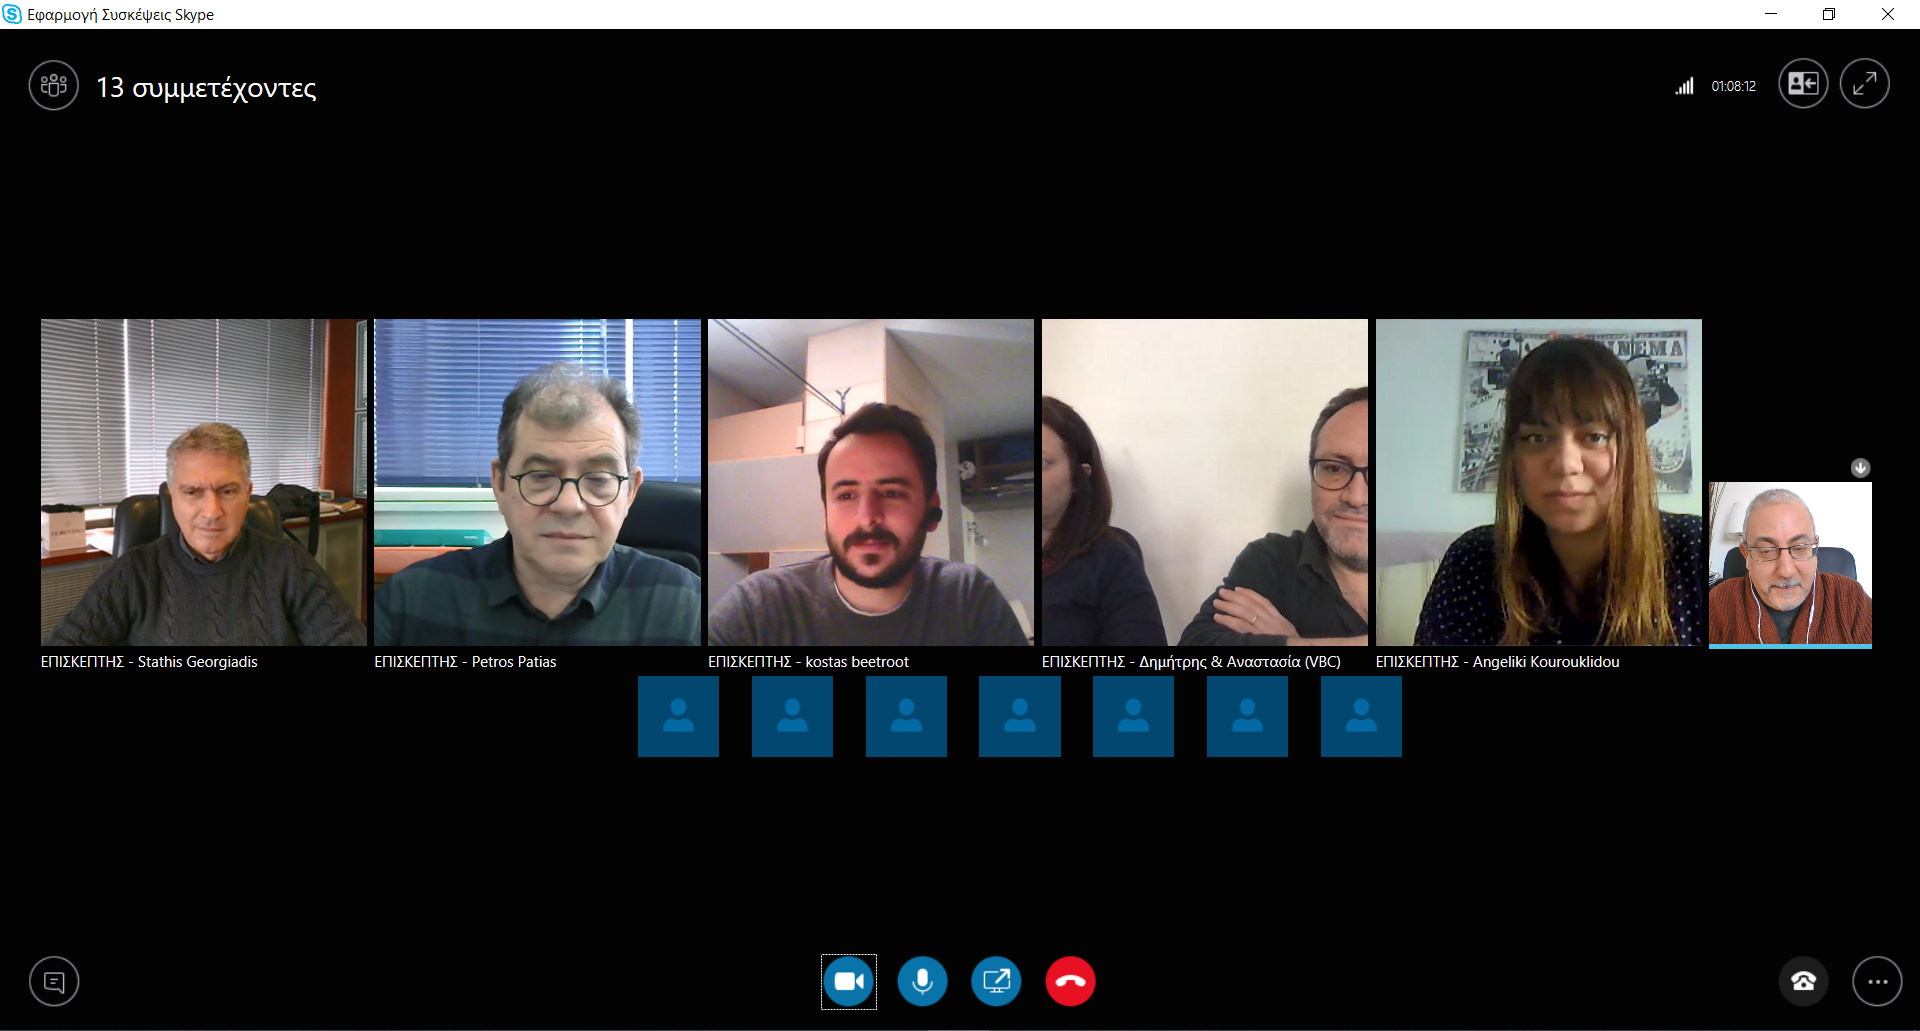 Εικόνα 1 skype απόσπασμα ομάδας εργασίας DigiOrh 1η συνάντηση